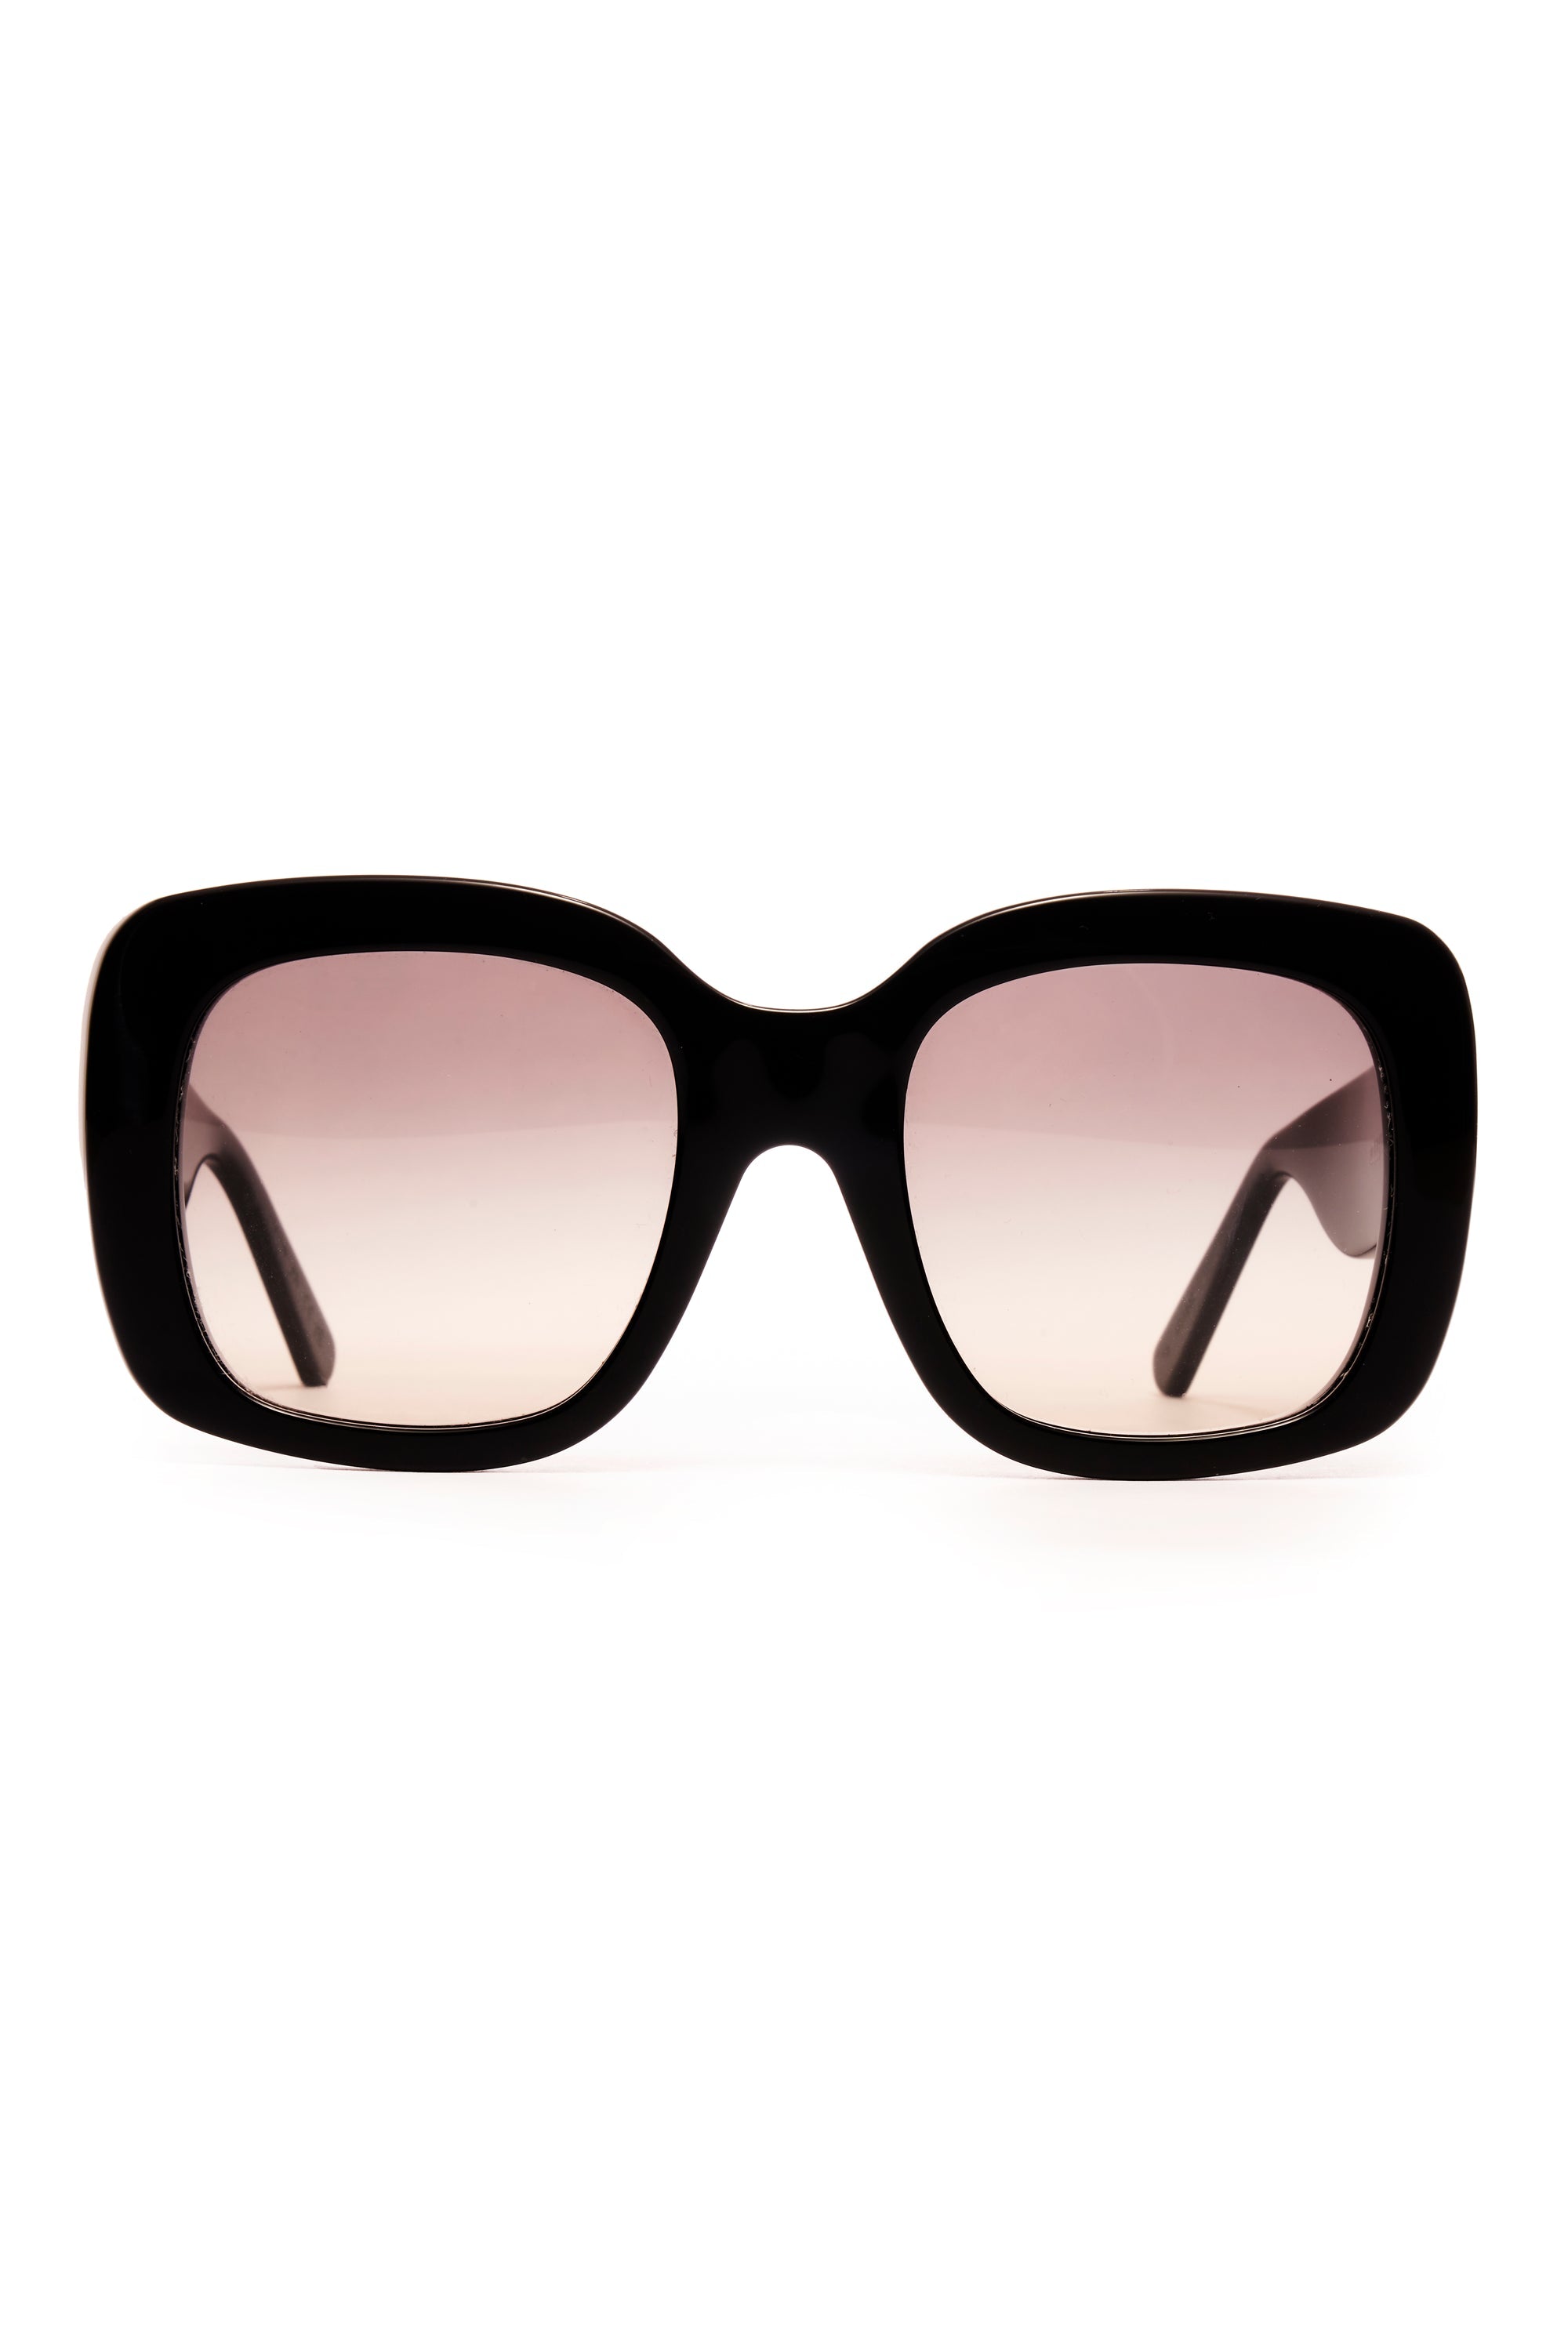 Louis Vuitton Black Embossed Monogram Sunglasses